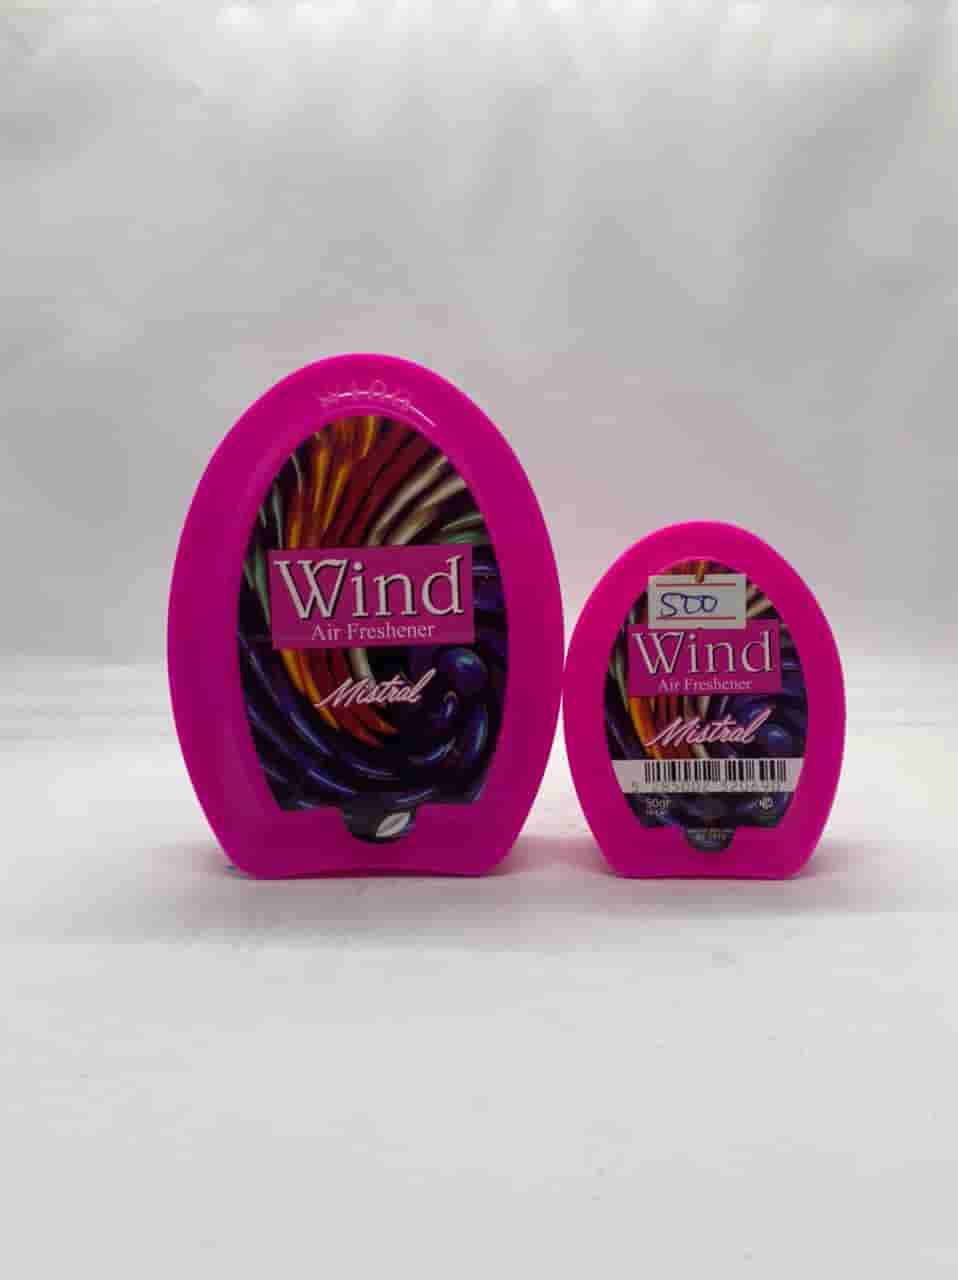 Wind Air Freshener